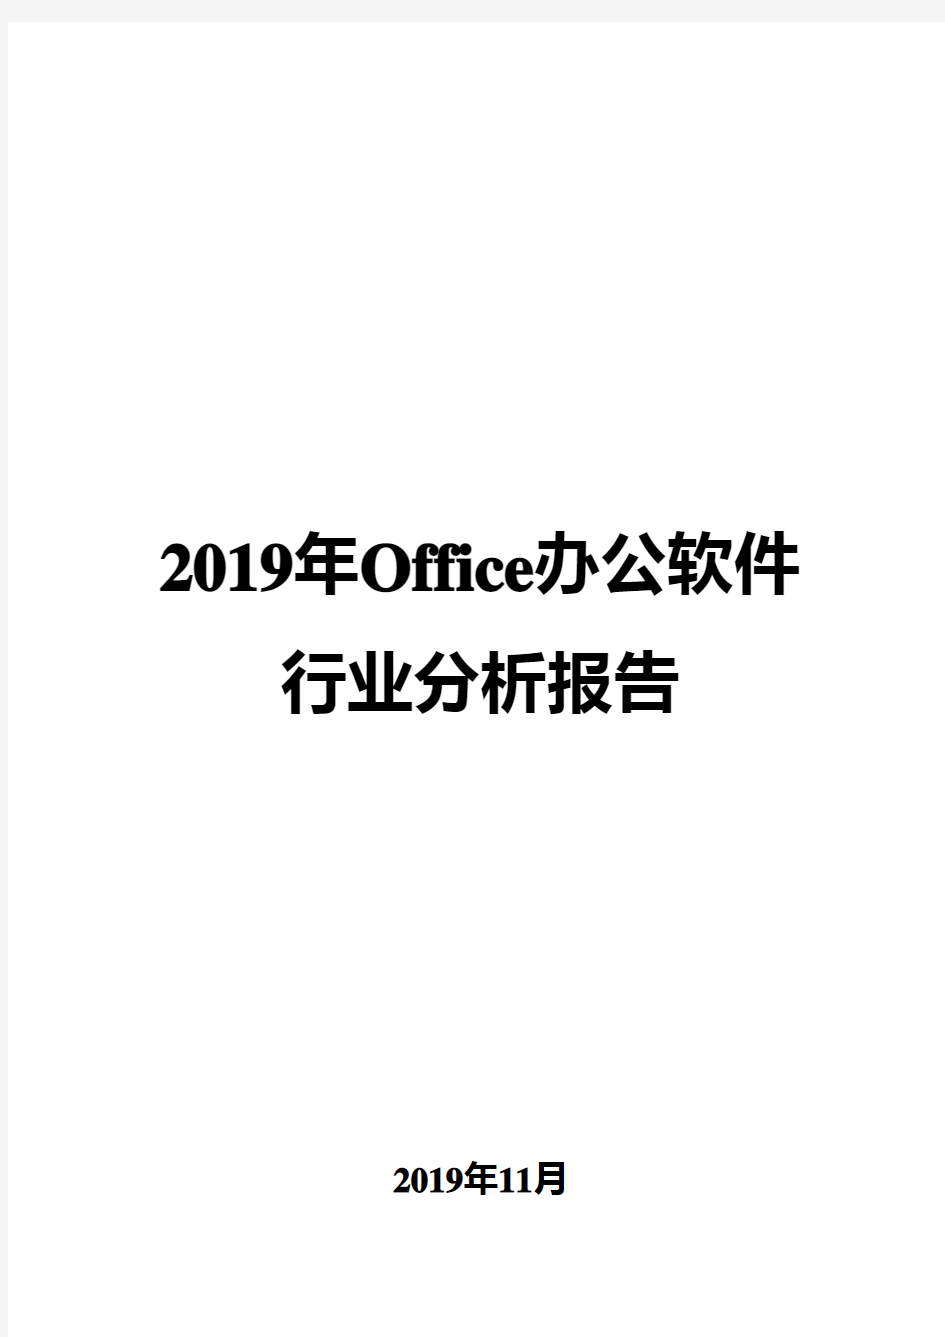 2019年Office办公软件行业分析报告